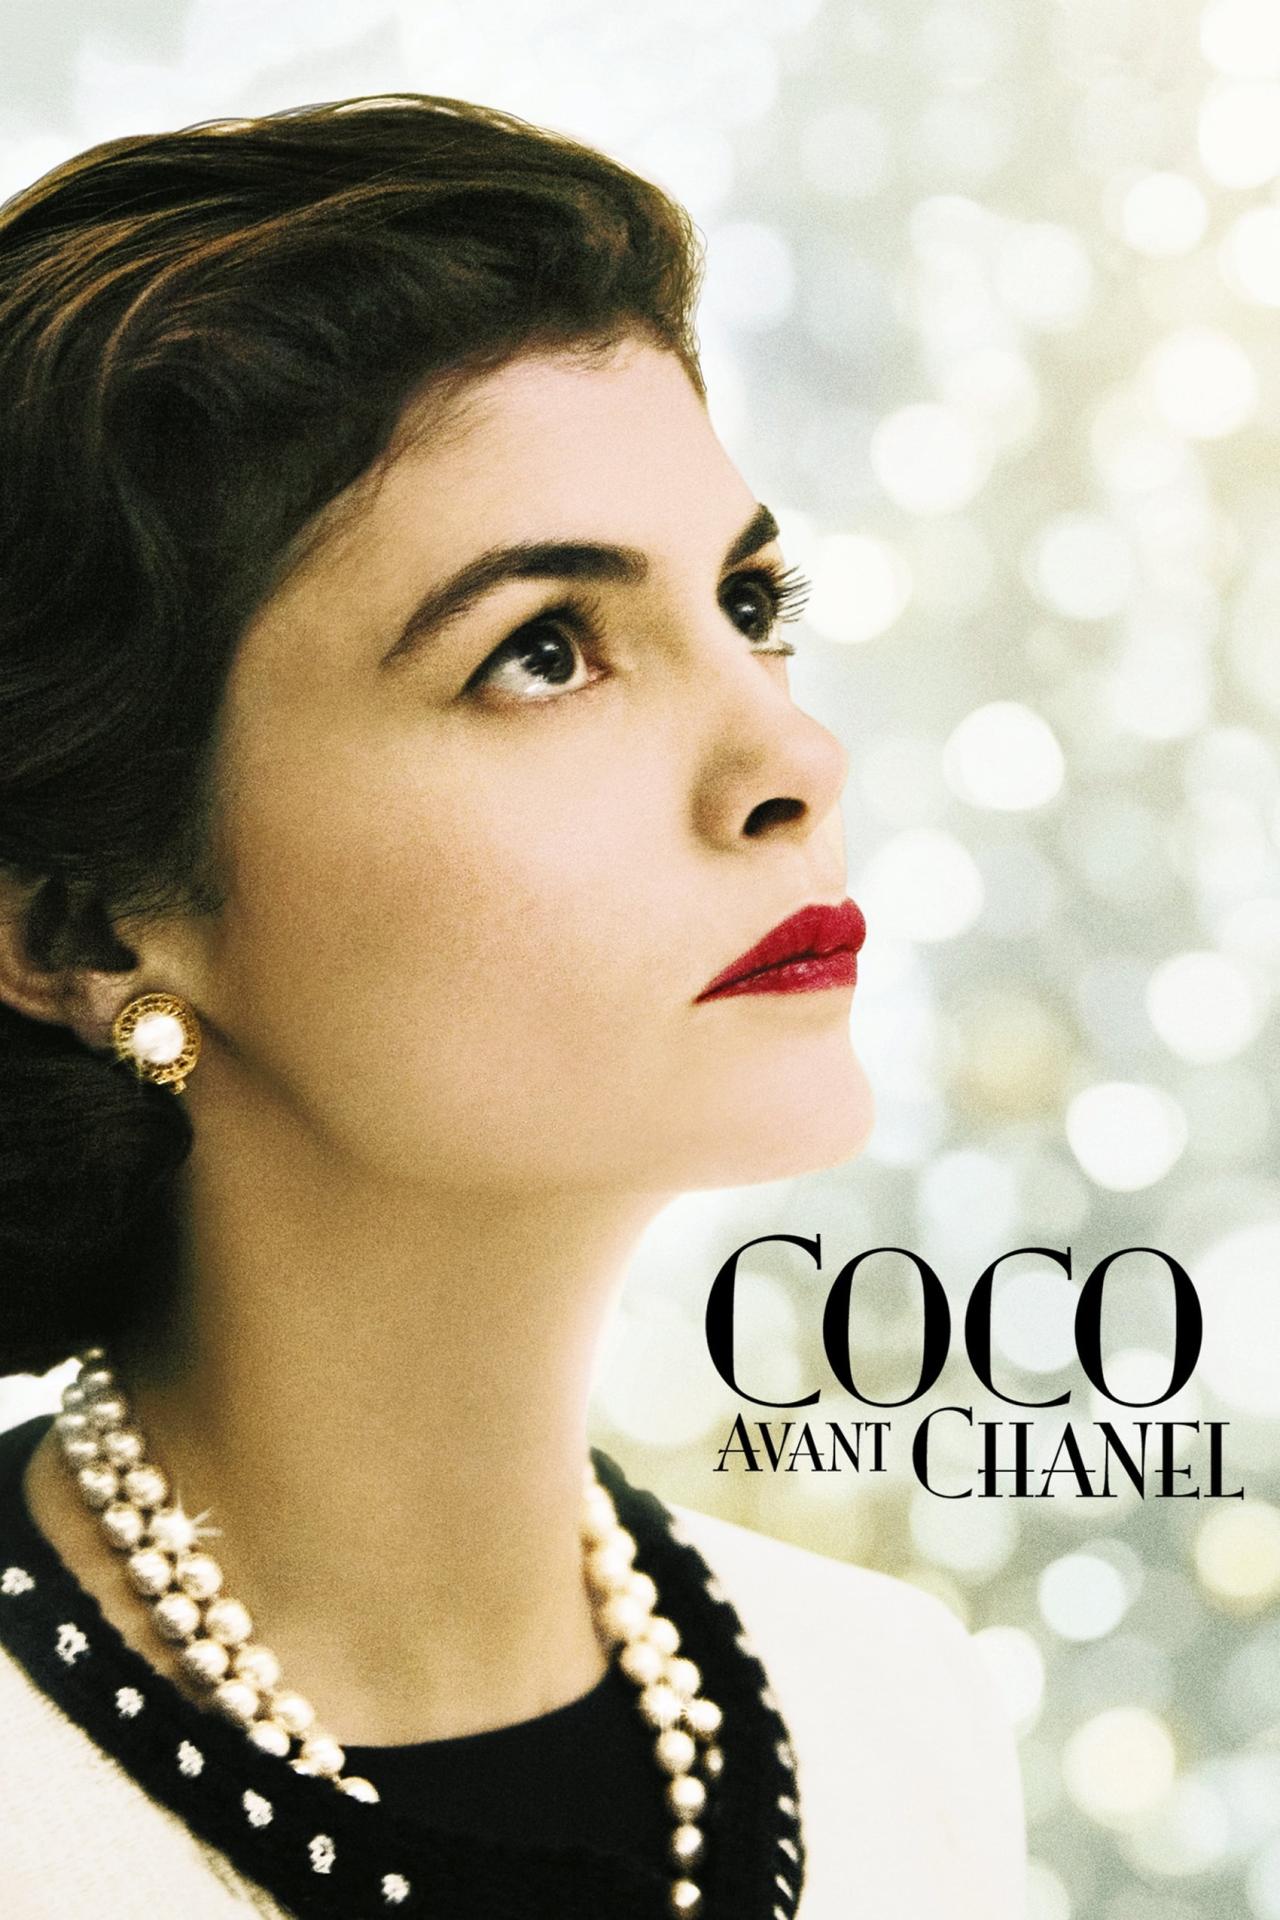 Coco avant Chanel est-il disponible sur Netflix ou autre ?